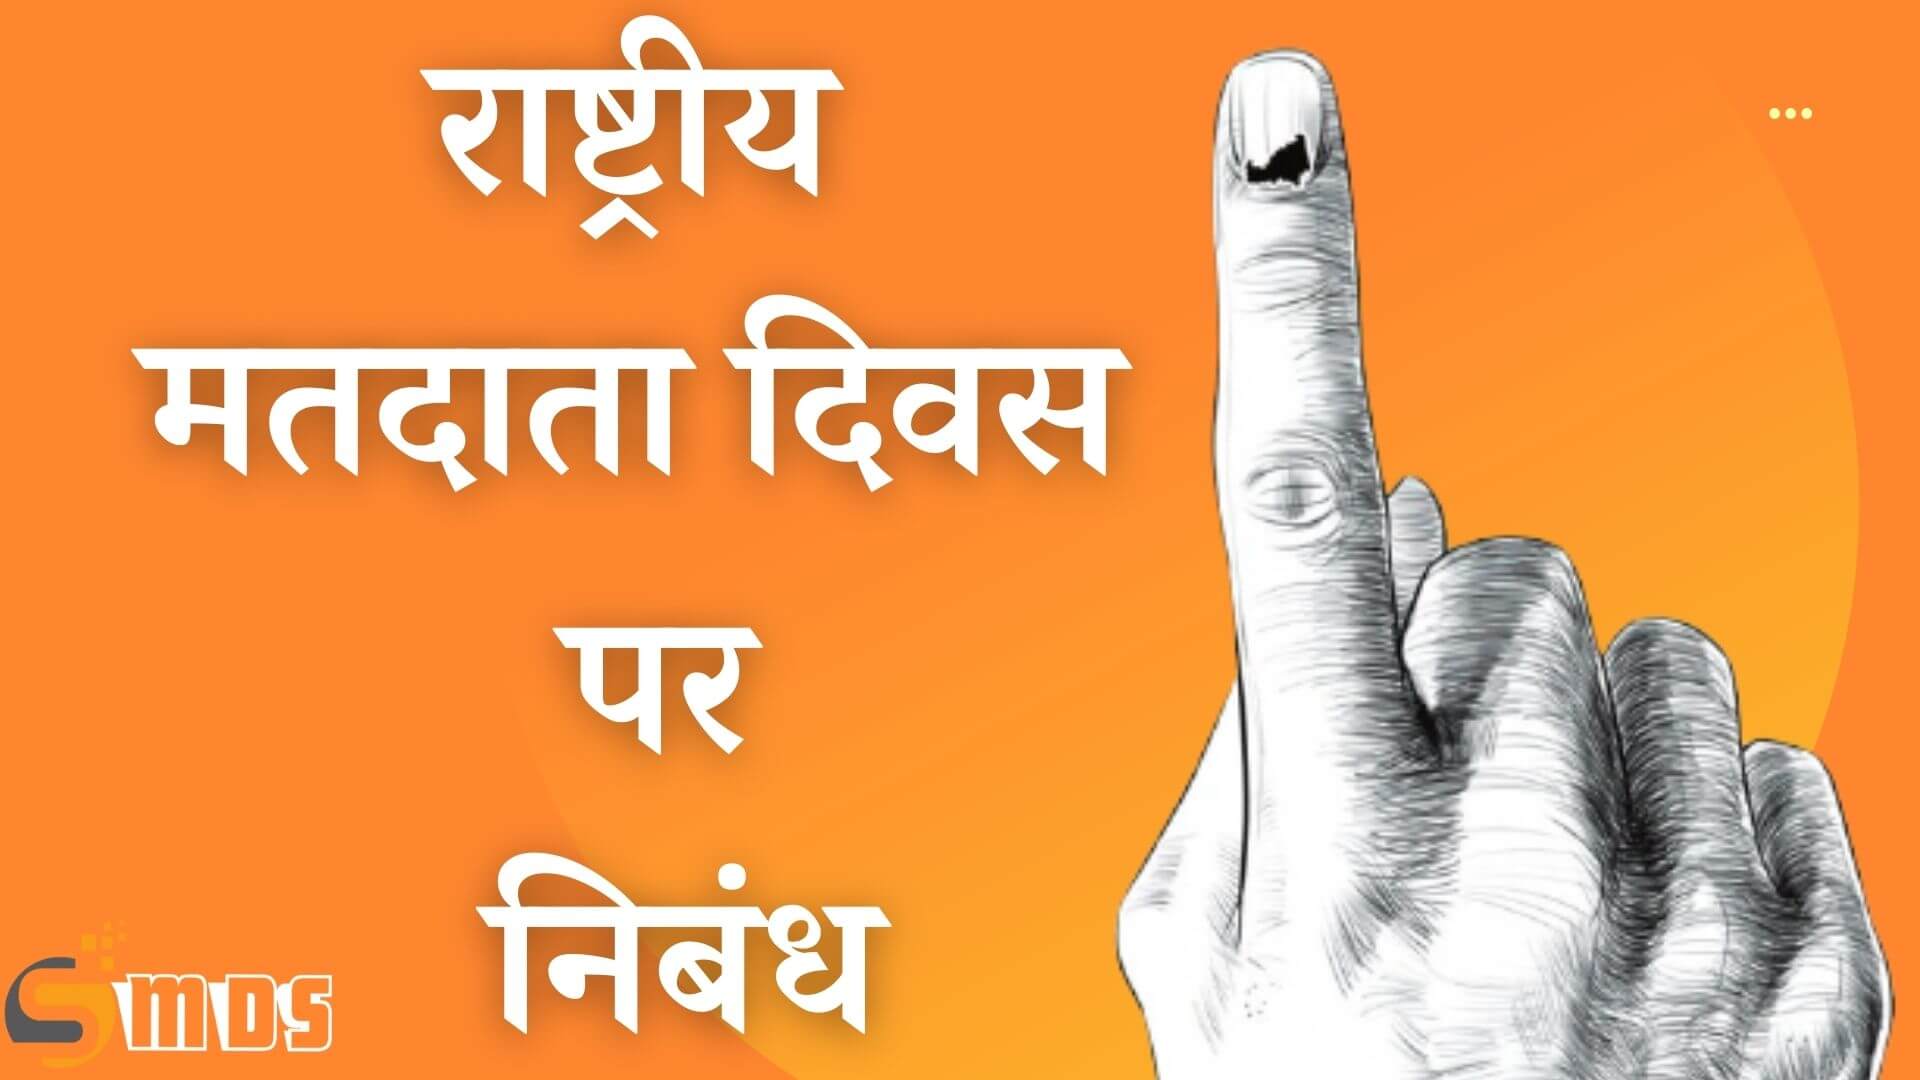 राष्ट्रीय मतदाता दिवस पर निबंध – Essay on National Voters Day in Hindi